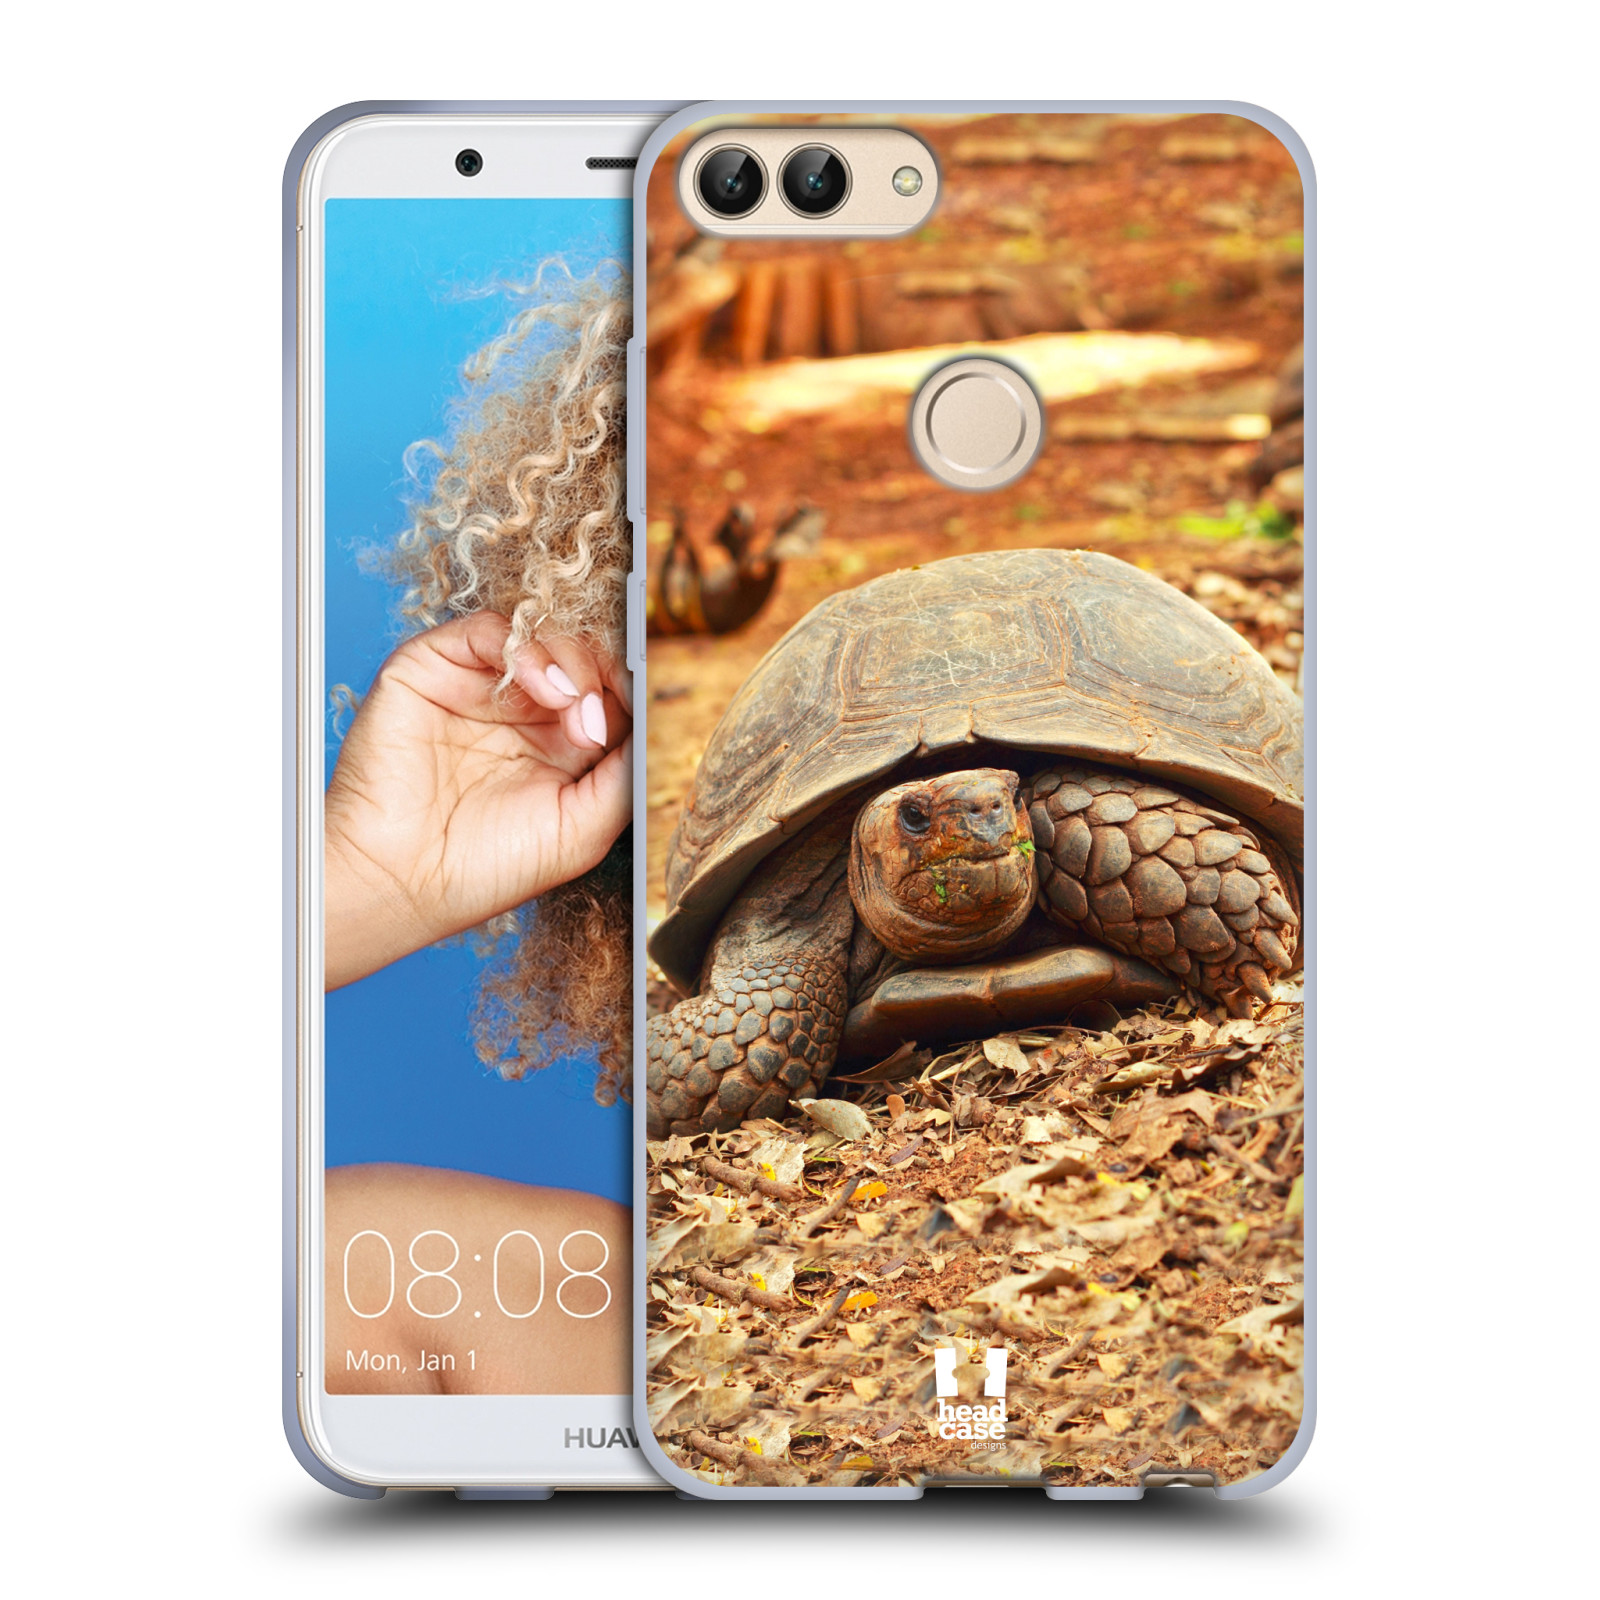 HEAD CASE silikon obal na mobil Huawei P SMART vzor slavná zvířata foto želva